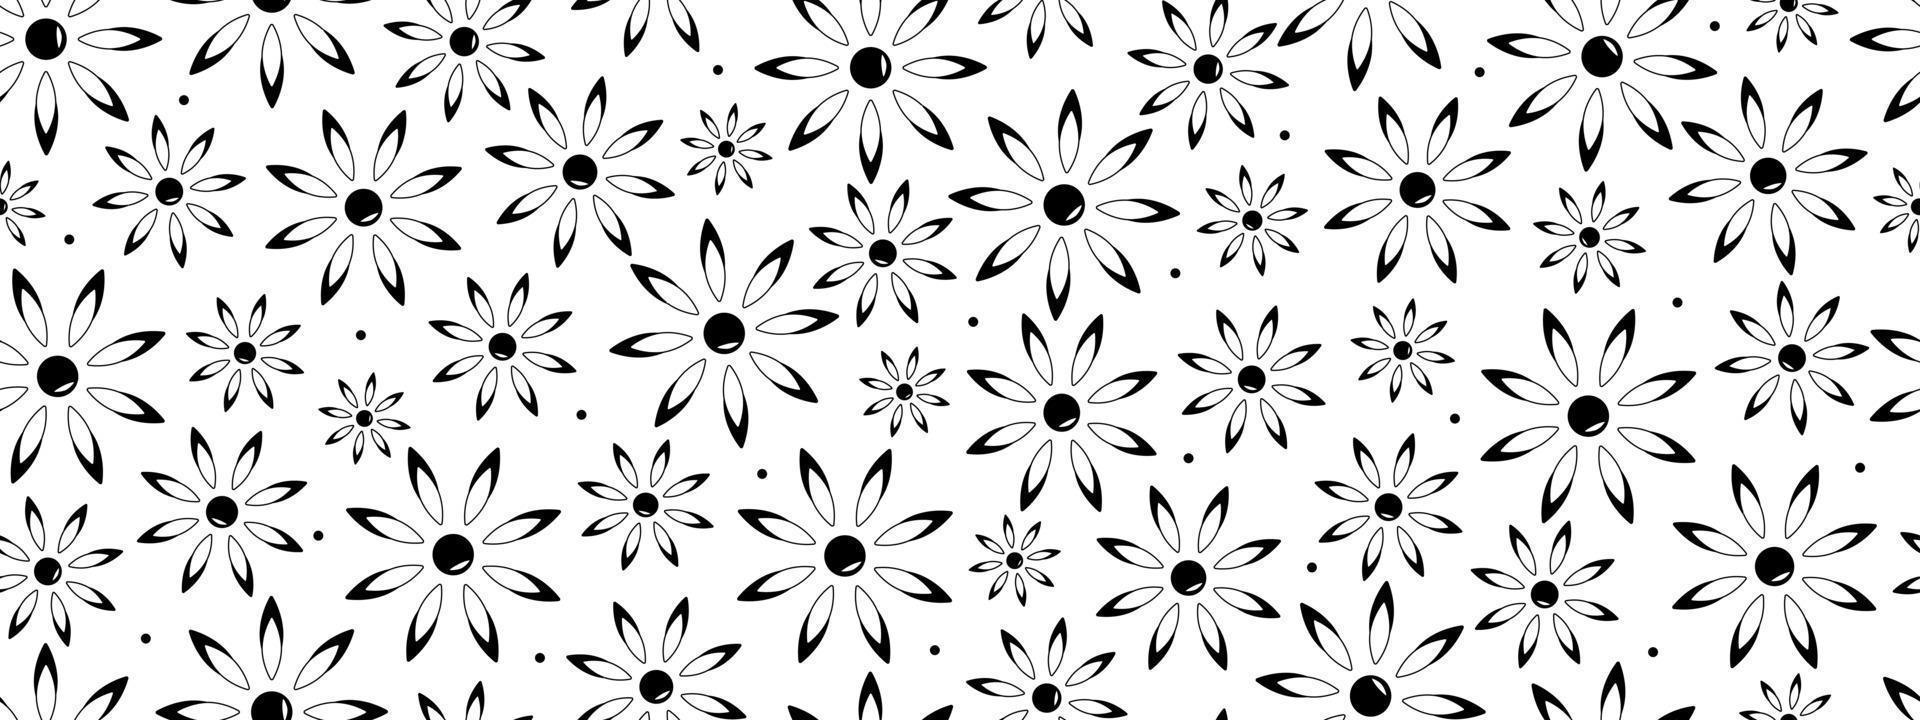 seamless mönster av svarta och vita daisy blommor abstrakt, banner vektor illustration.